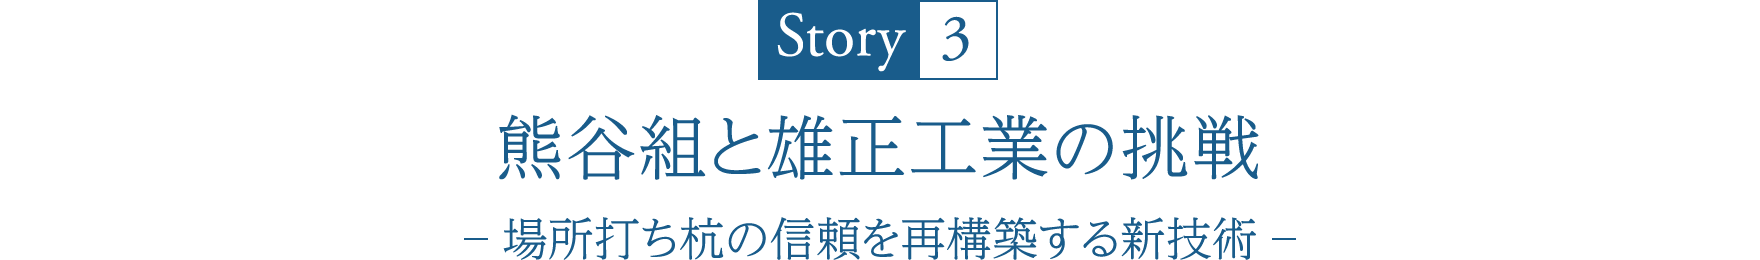 Story3 熊谷組と雄正工業の挑戦 -場所打ち杭の信頼を再構築する新技術-